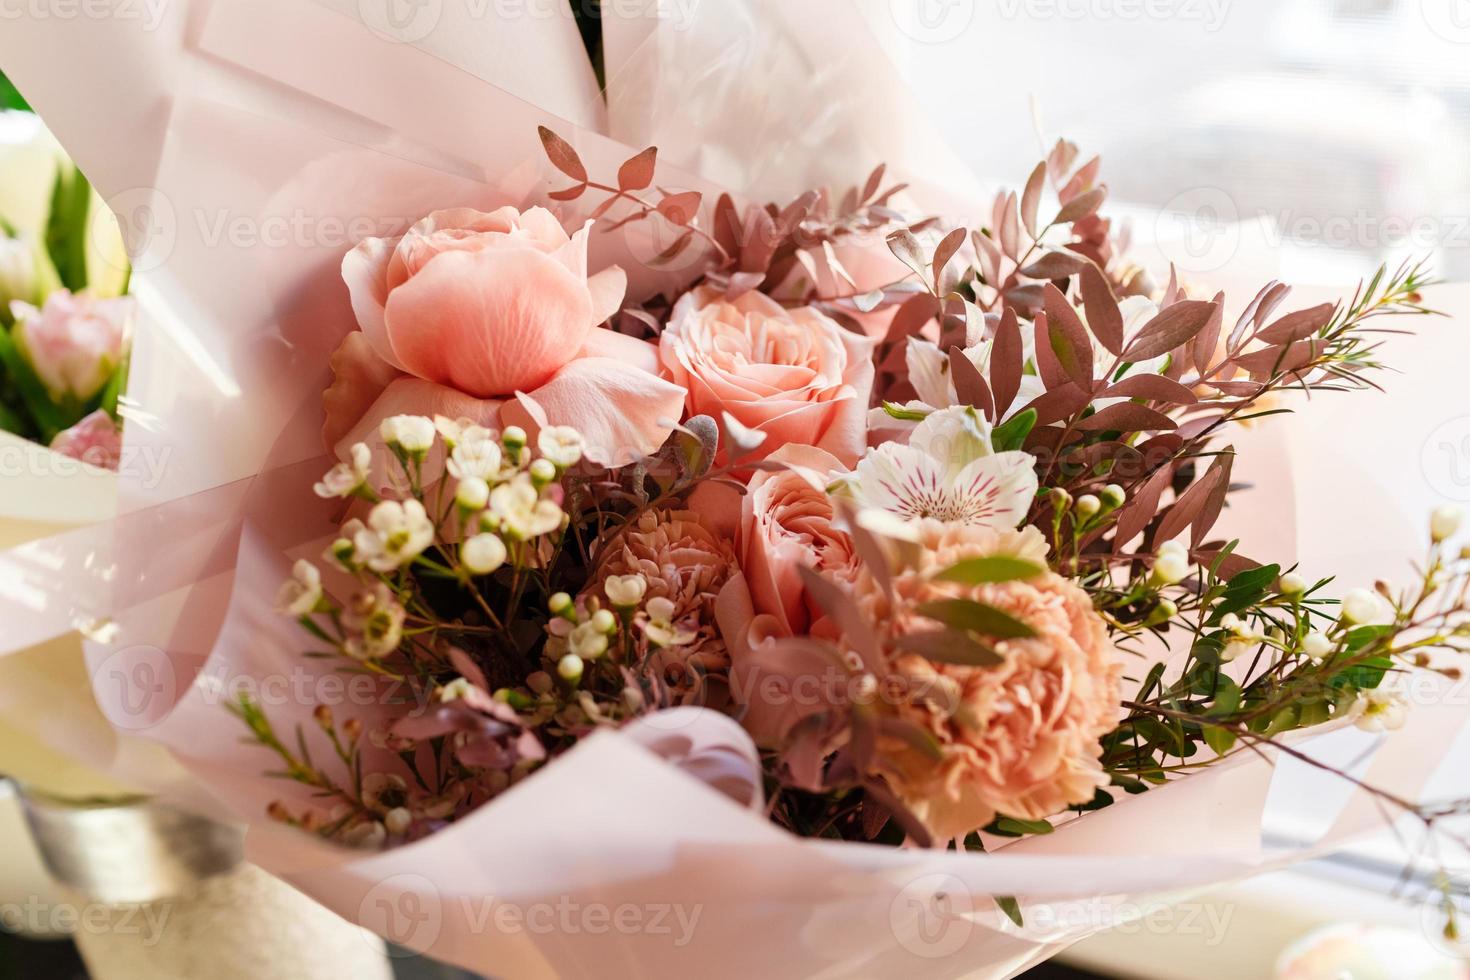 vackert förpackade blomma arrangemang för berömd mödrar dag, födelsedag, årsdag, kvinnors dag i en festlig papper paket. de begrepp av en blomma affär och blomma leverans, blomsterhandlare arbete foto